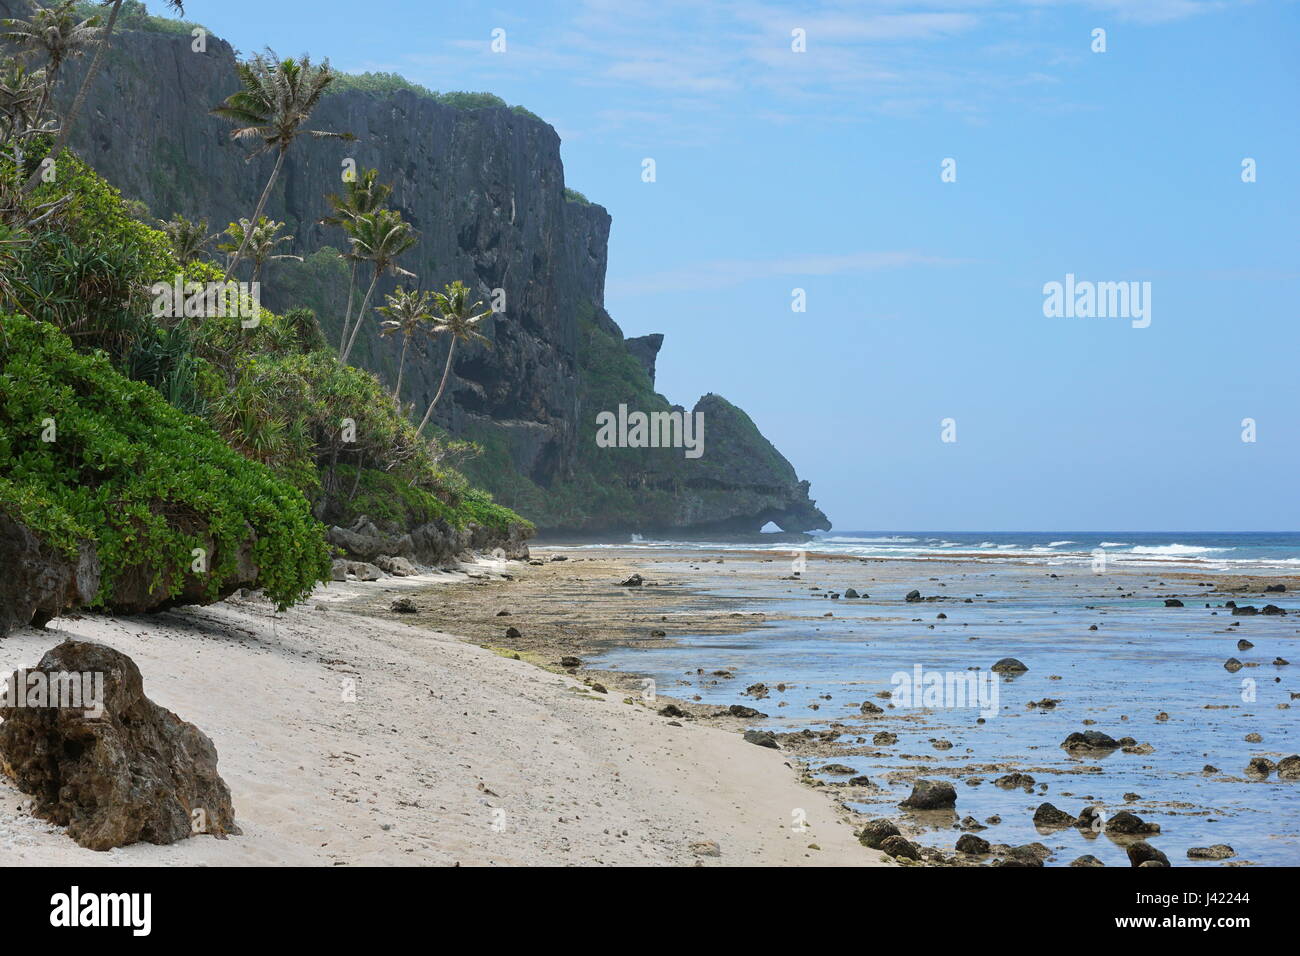 Accidentado paisaje costero en la costa de la isla de Rurutu con acantilados erosionados y vegetación tropical, el océano Pacífico, Austral, Polinesia Francesa Foto de stock